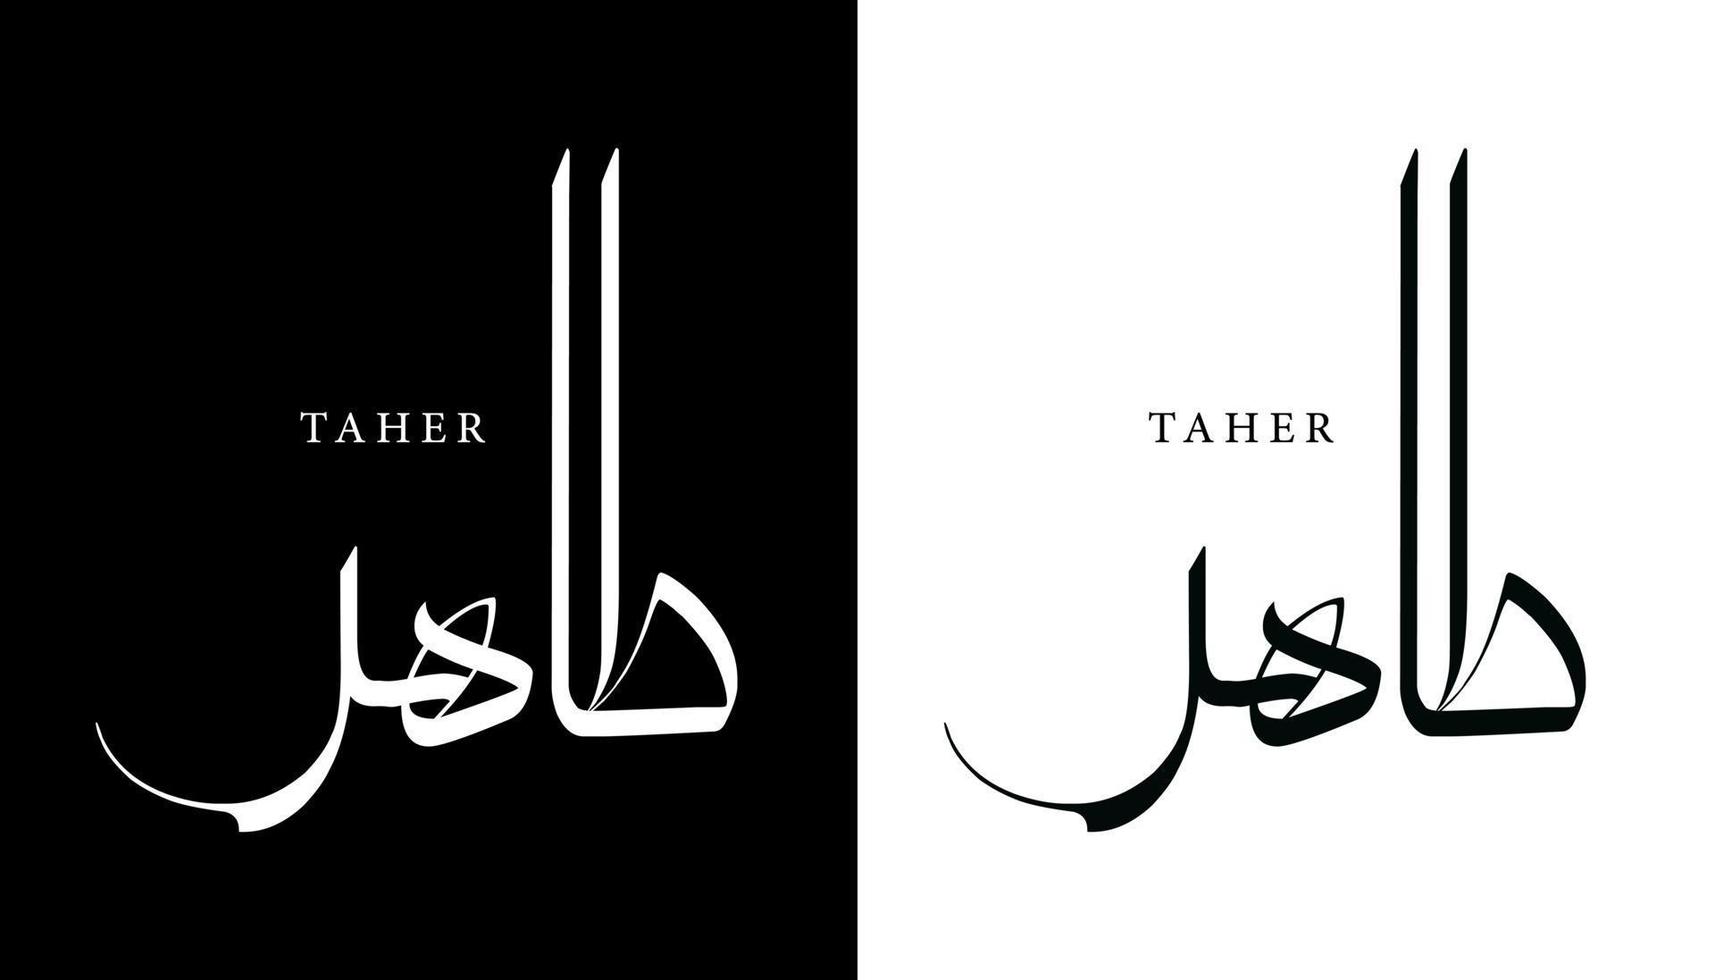 nombre de caligrafía árabe traducido 'taher' letras árabes alfabeto fuente letras islámicas logotipo vector ilustración